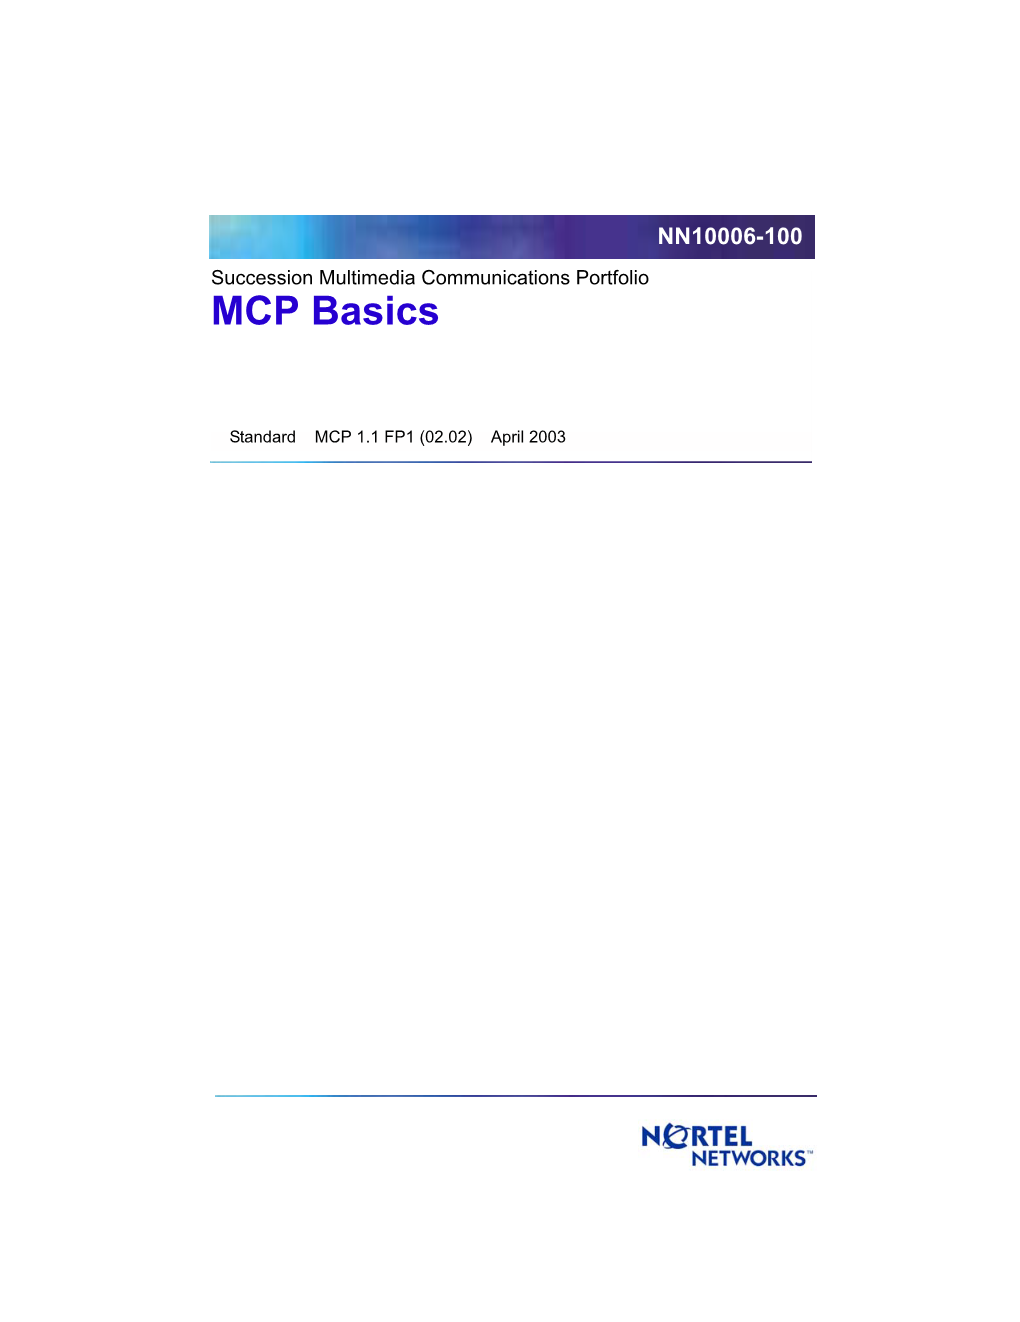 MCP Basics.Pdf